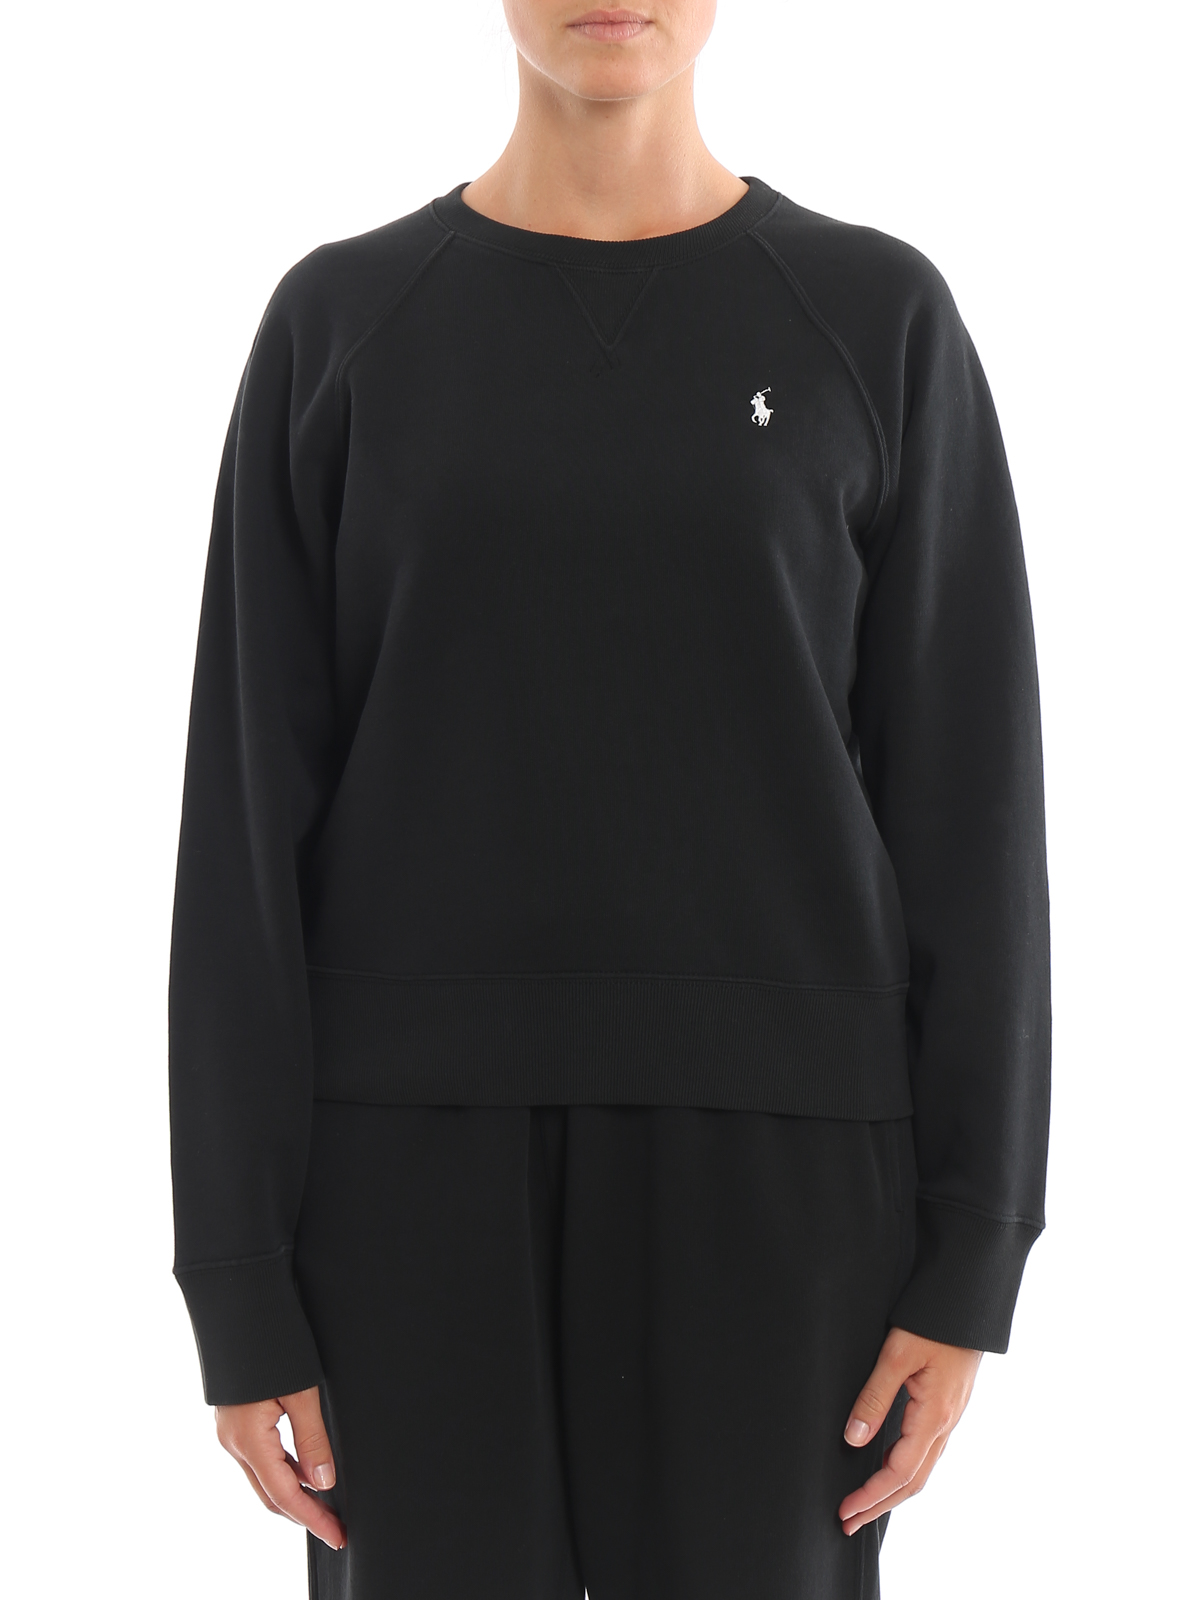 Sweatshirts & Sweaters Polo Ralph Lauren - Crew neck black sweatshirt -  211704751003